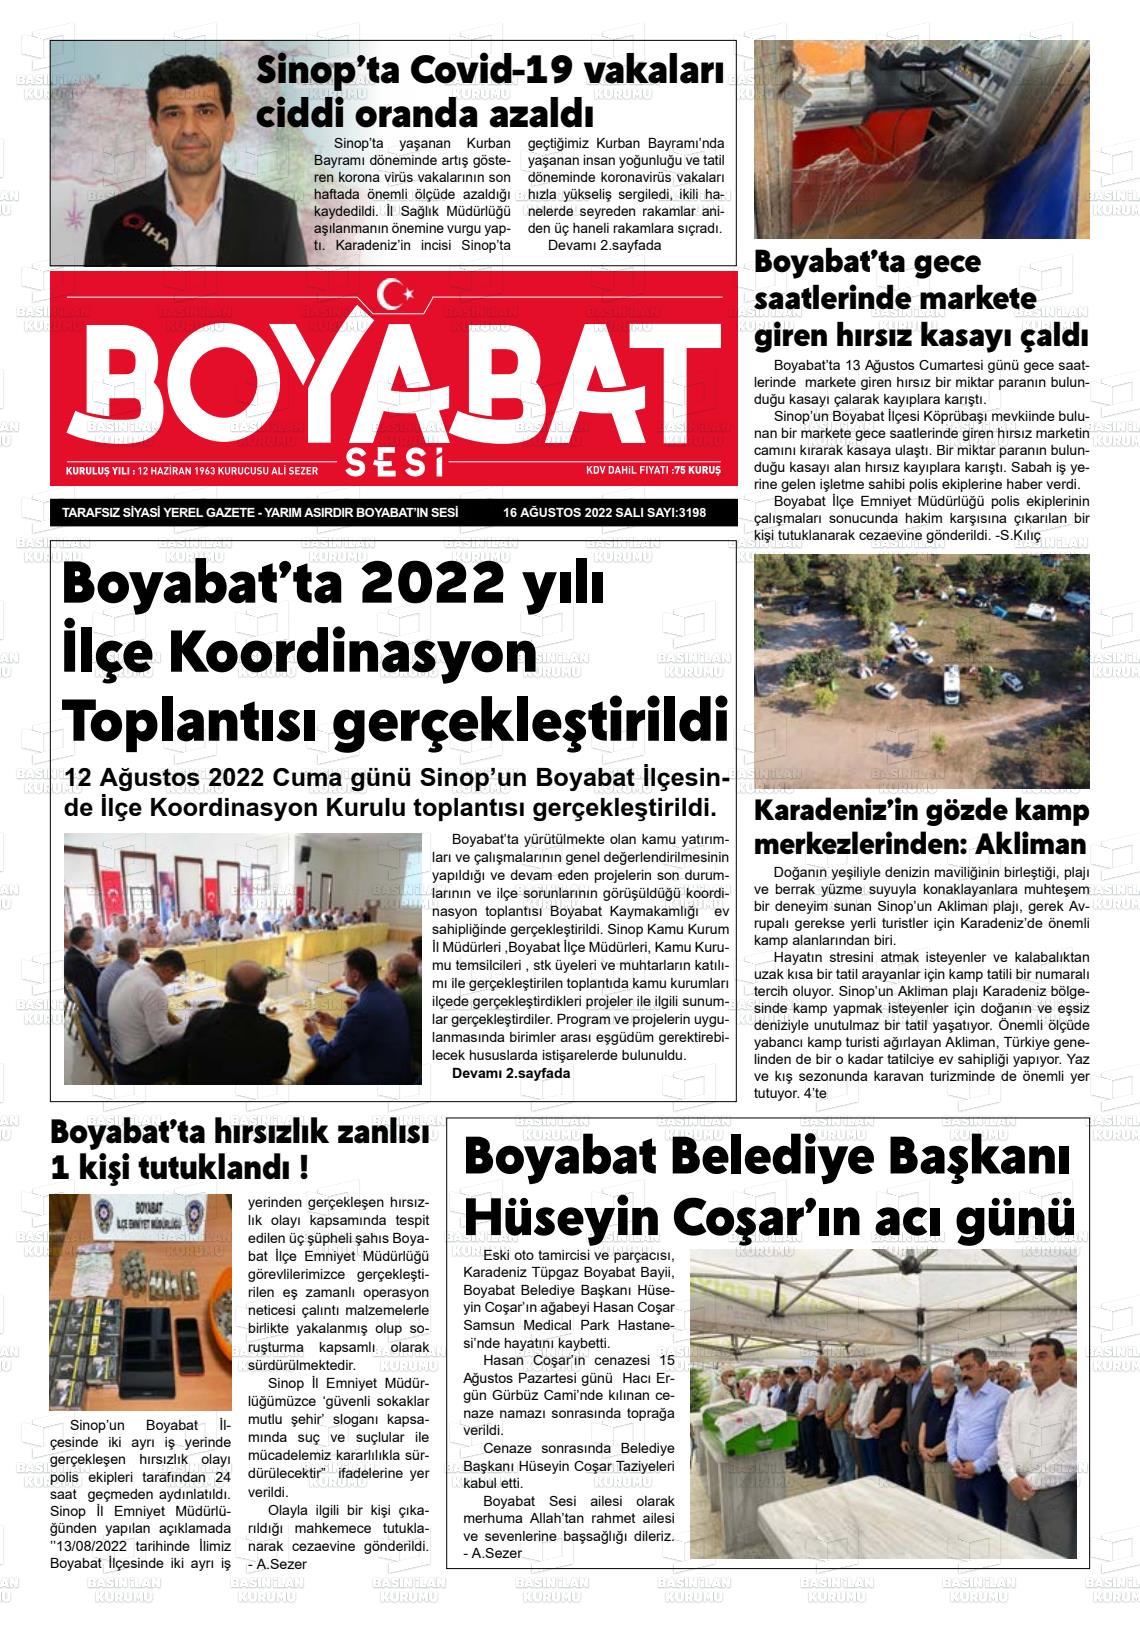 16 Ağustos 2022 Boyabat Sesi Gazete Manşeti